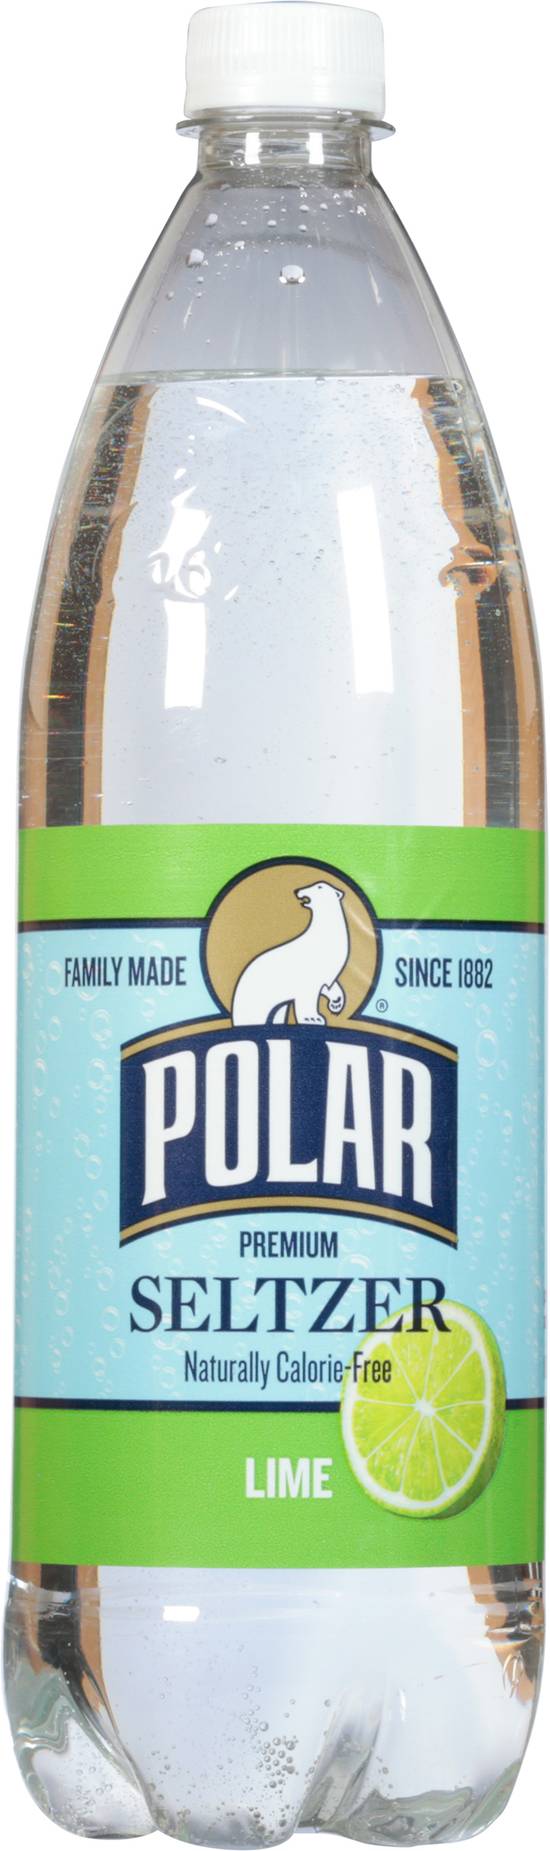 Polar Lime Flavor Seltzer (33.8 fl oz)